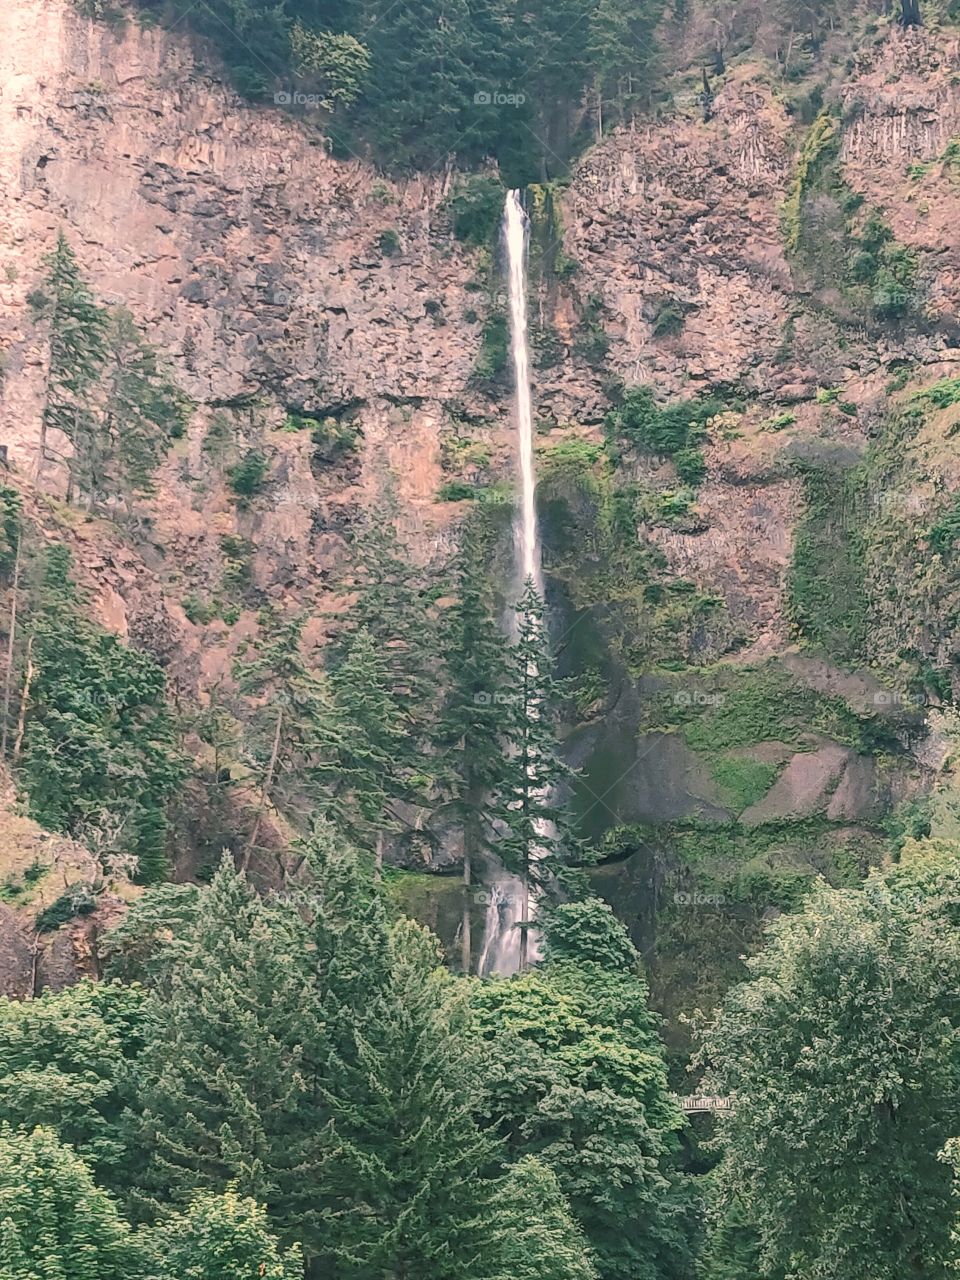 Multnomah Falls in Oregon